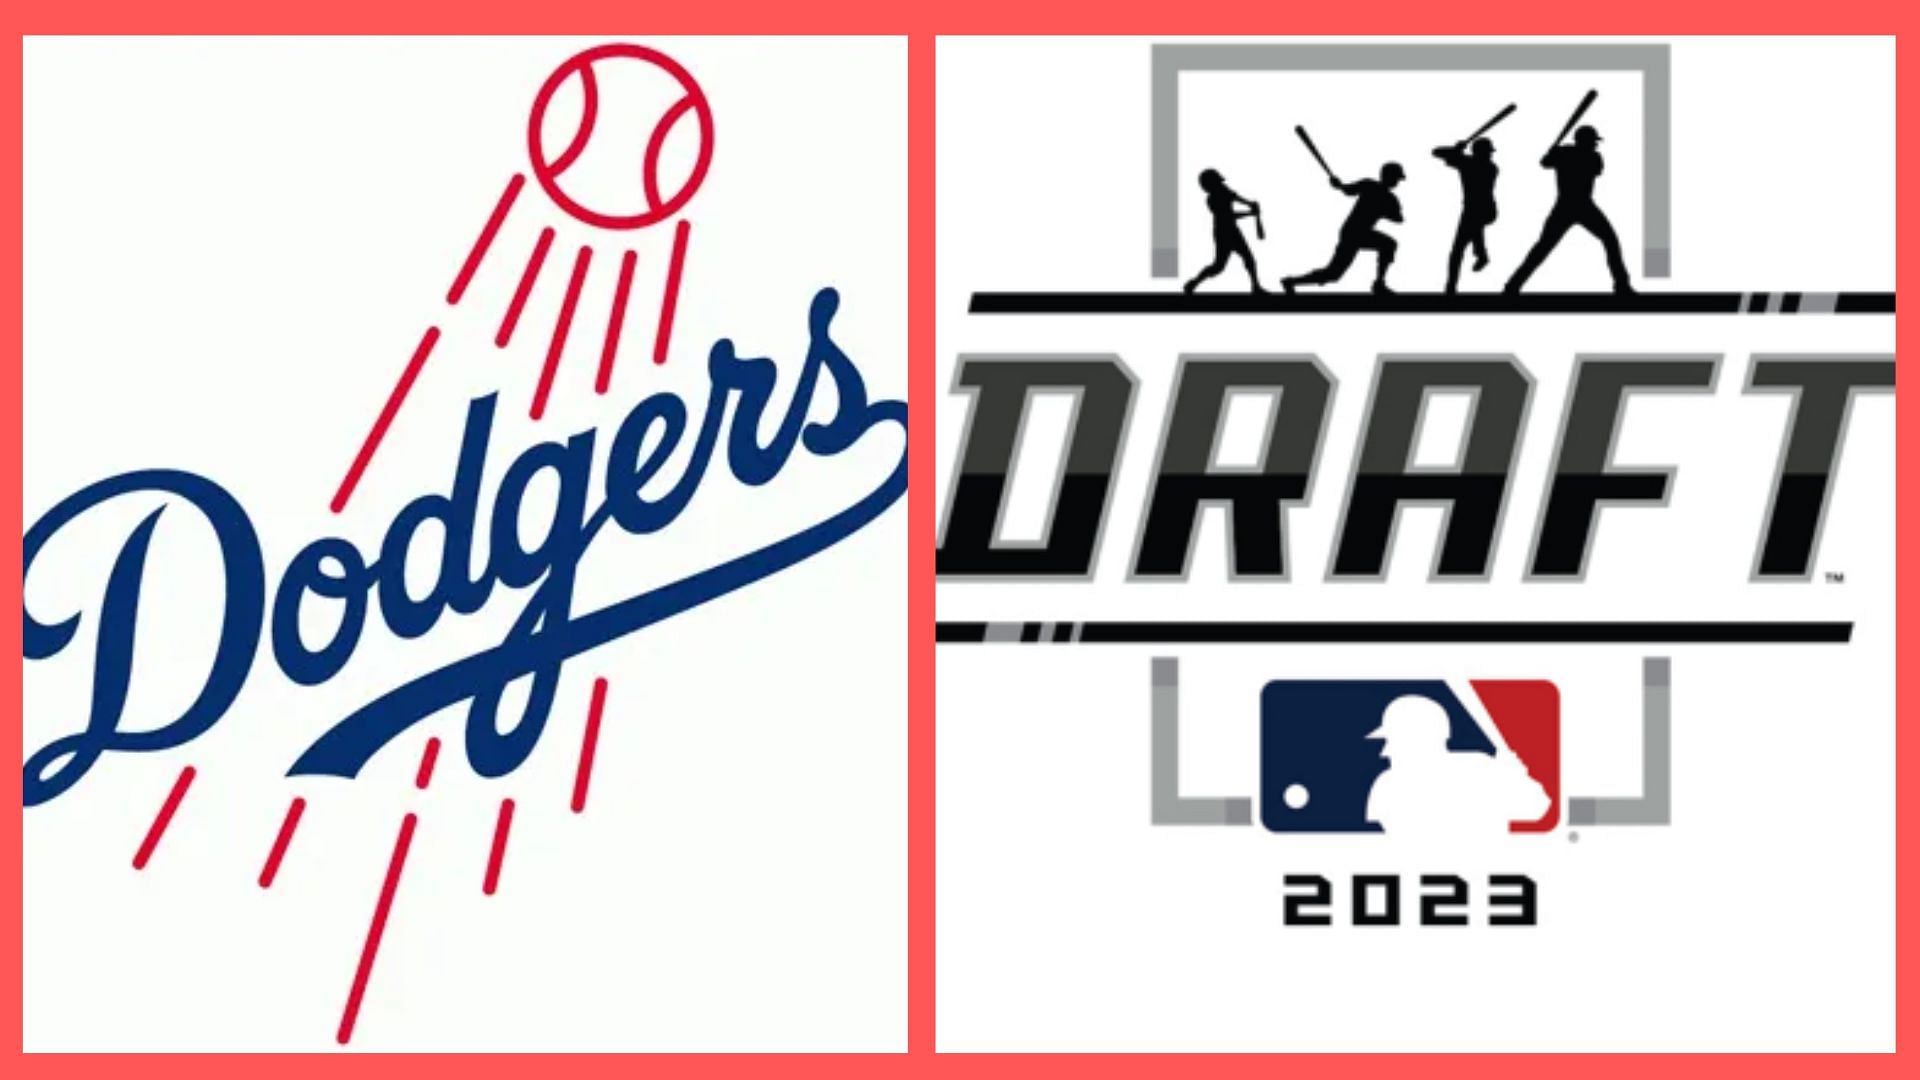 MLB Draft 2023 bonus pools, pick values